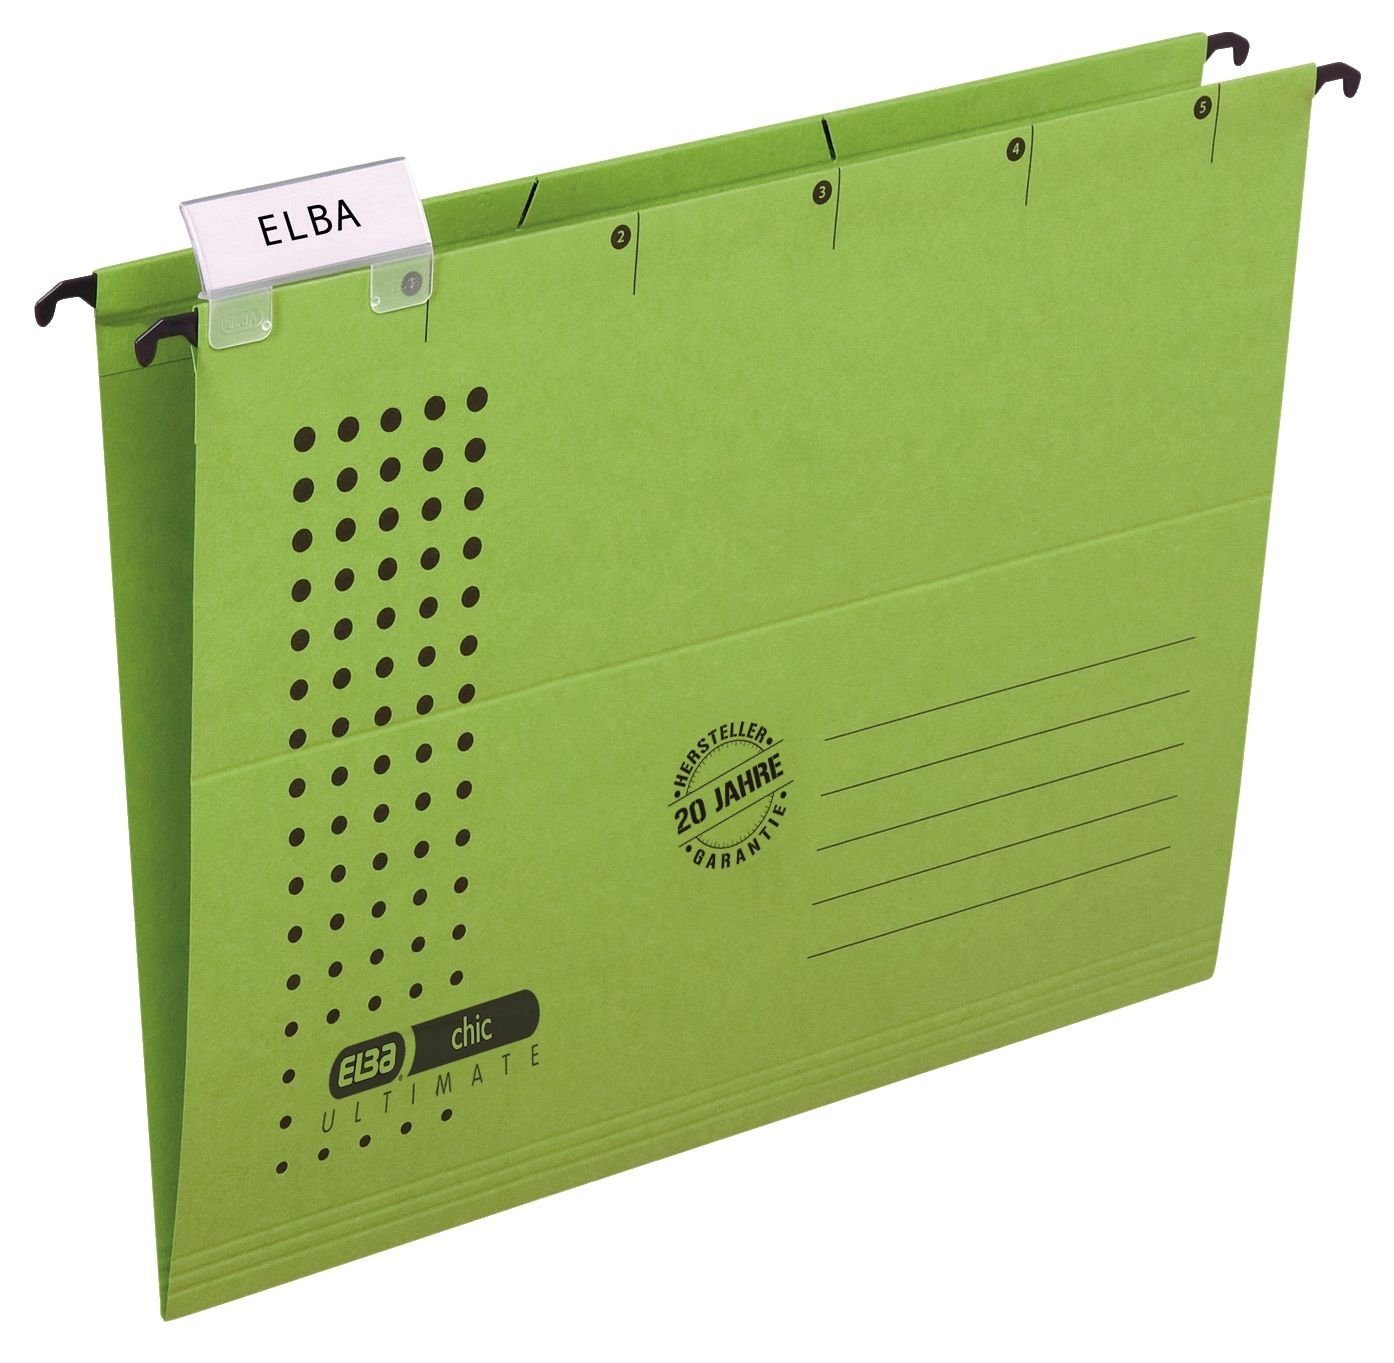 Hängemappe ELBA Karton chic Elba 100552088 230 grün - A4, (RC), g/qm, Schreibmappe